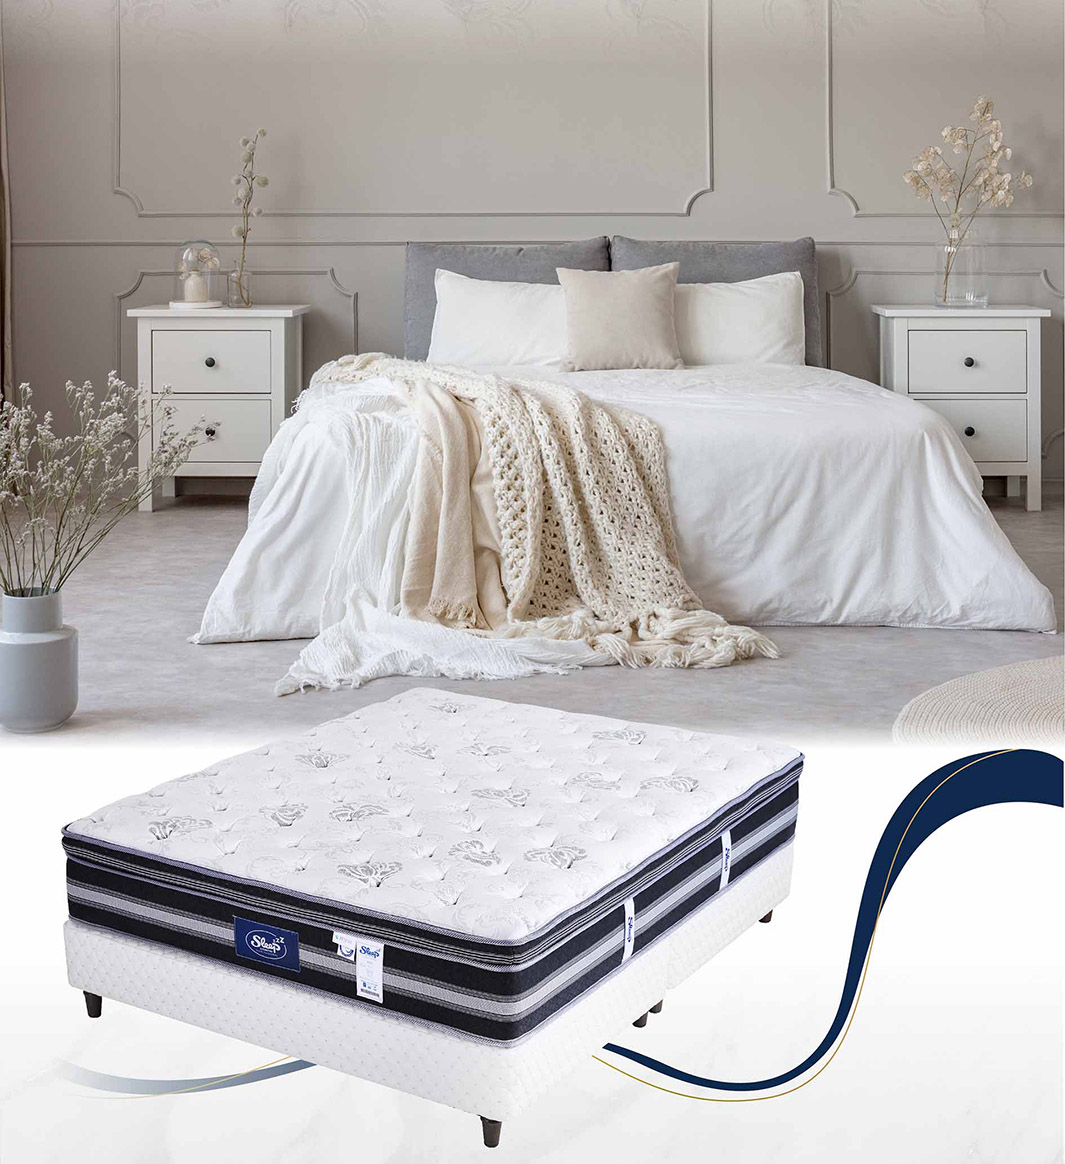 健康床墊mattress|SleepCountry公爵|睡眠王國集團